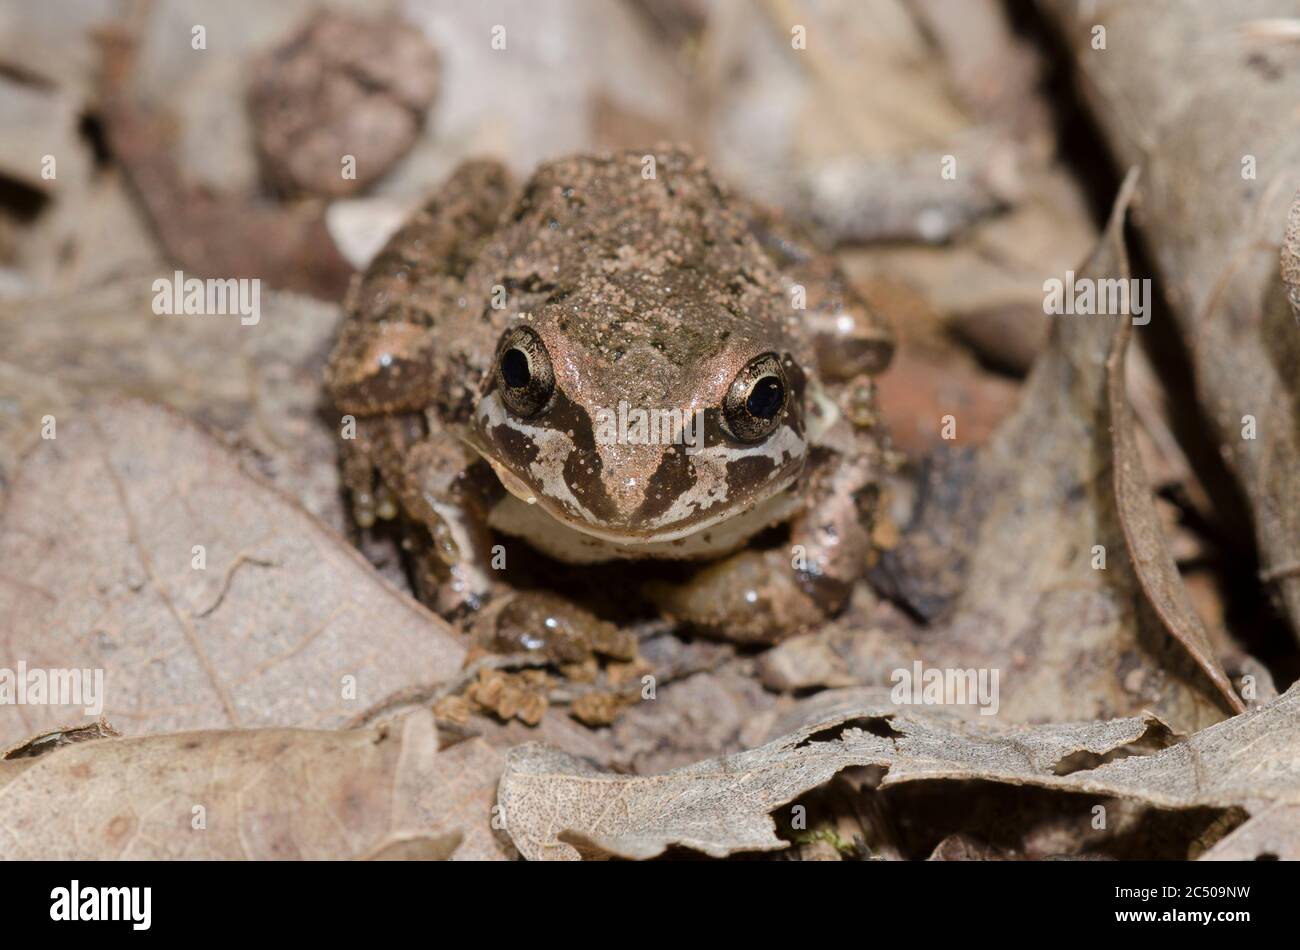 La grenouille Chorus de Strecker, Pseudacris streckeri, dans la litière de feuilles sur le sol forestier Banque D'Images